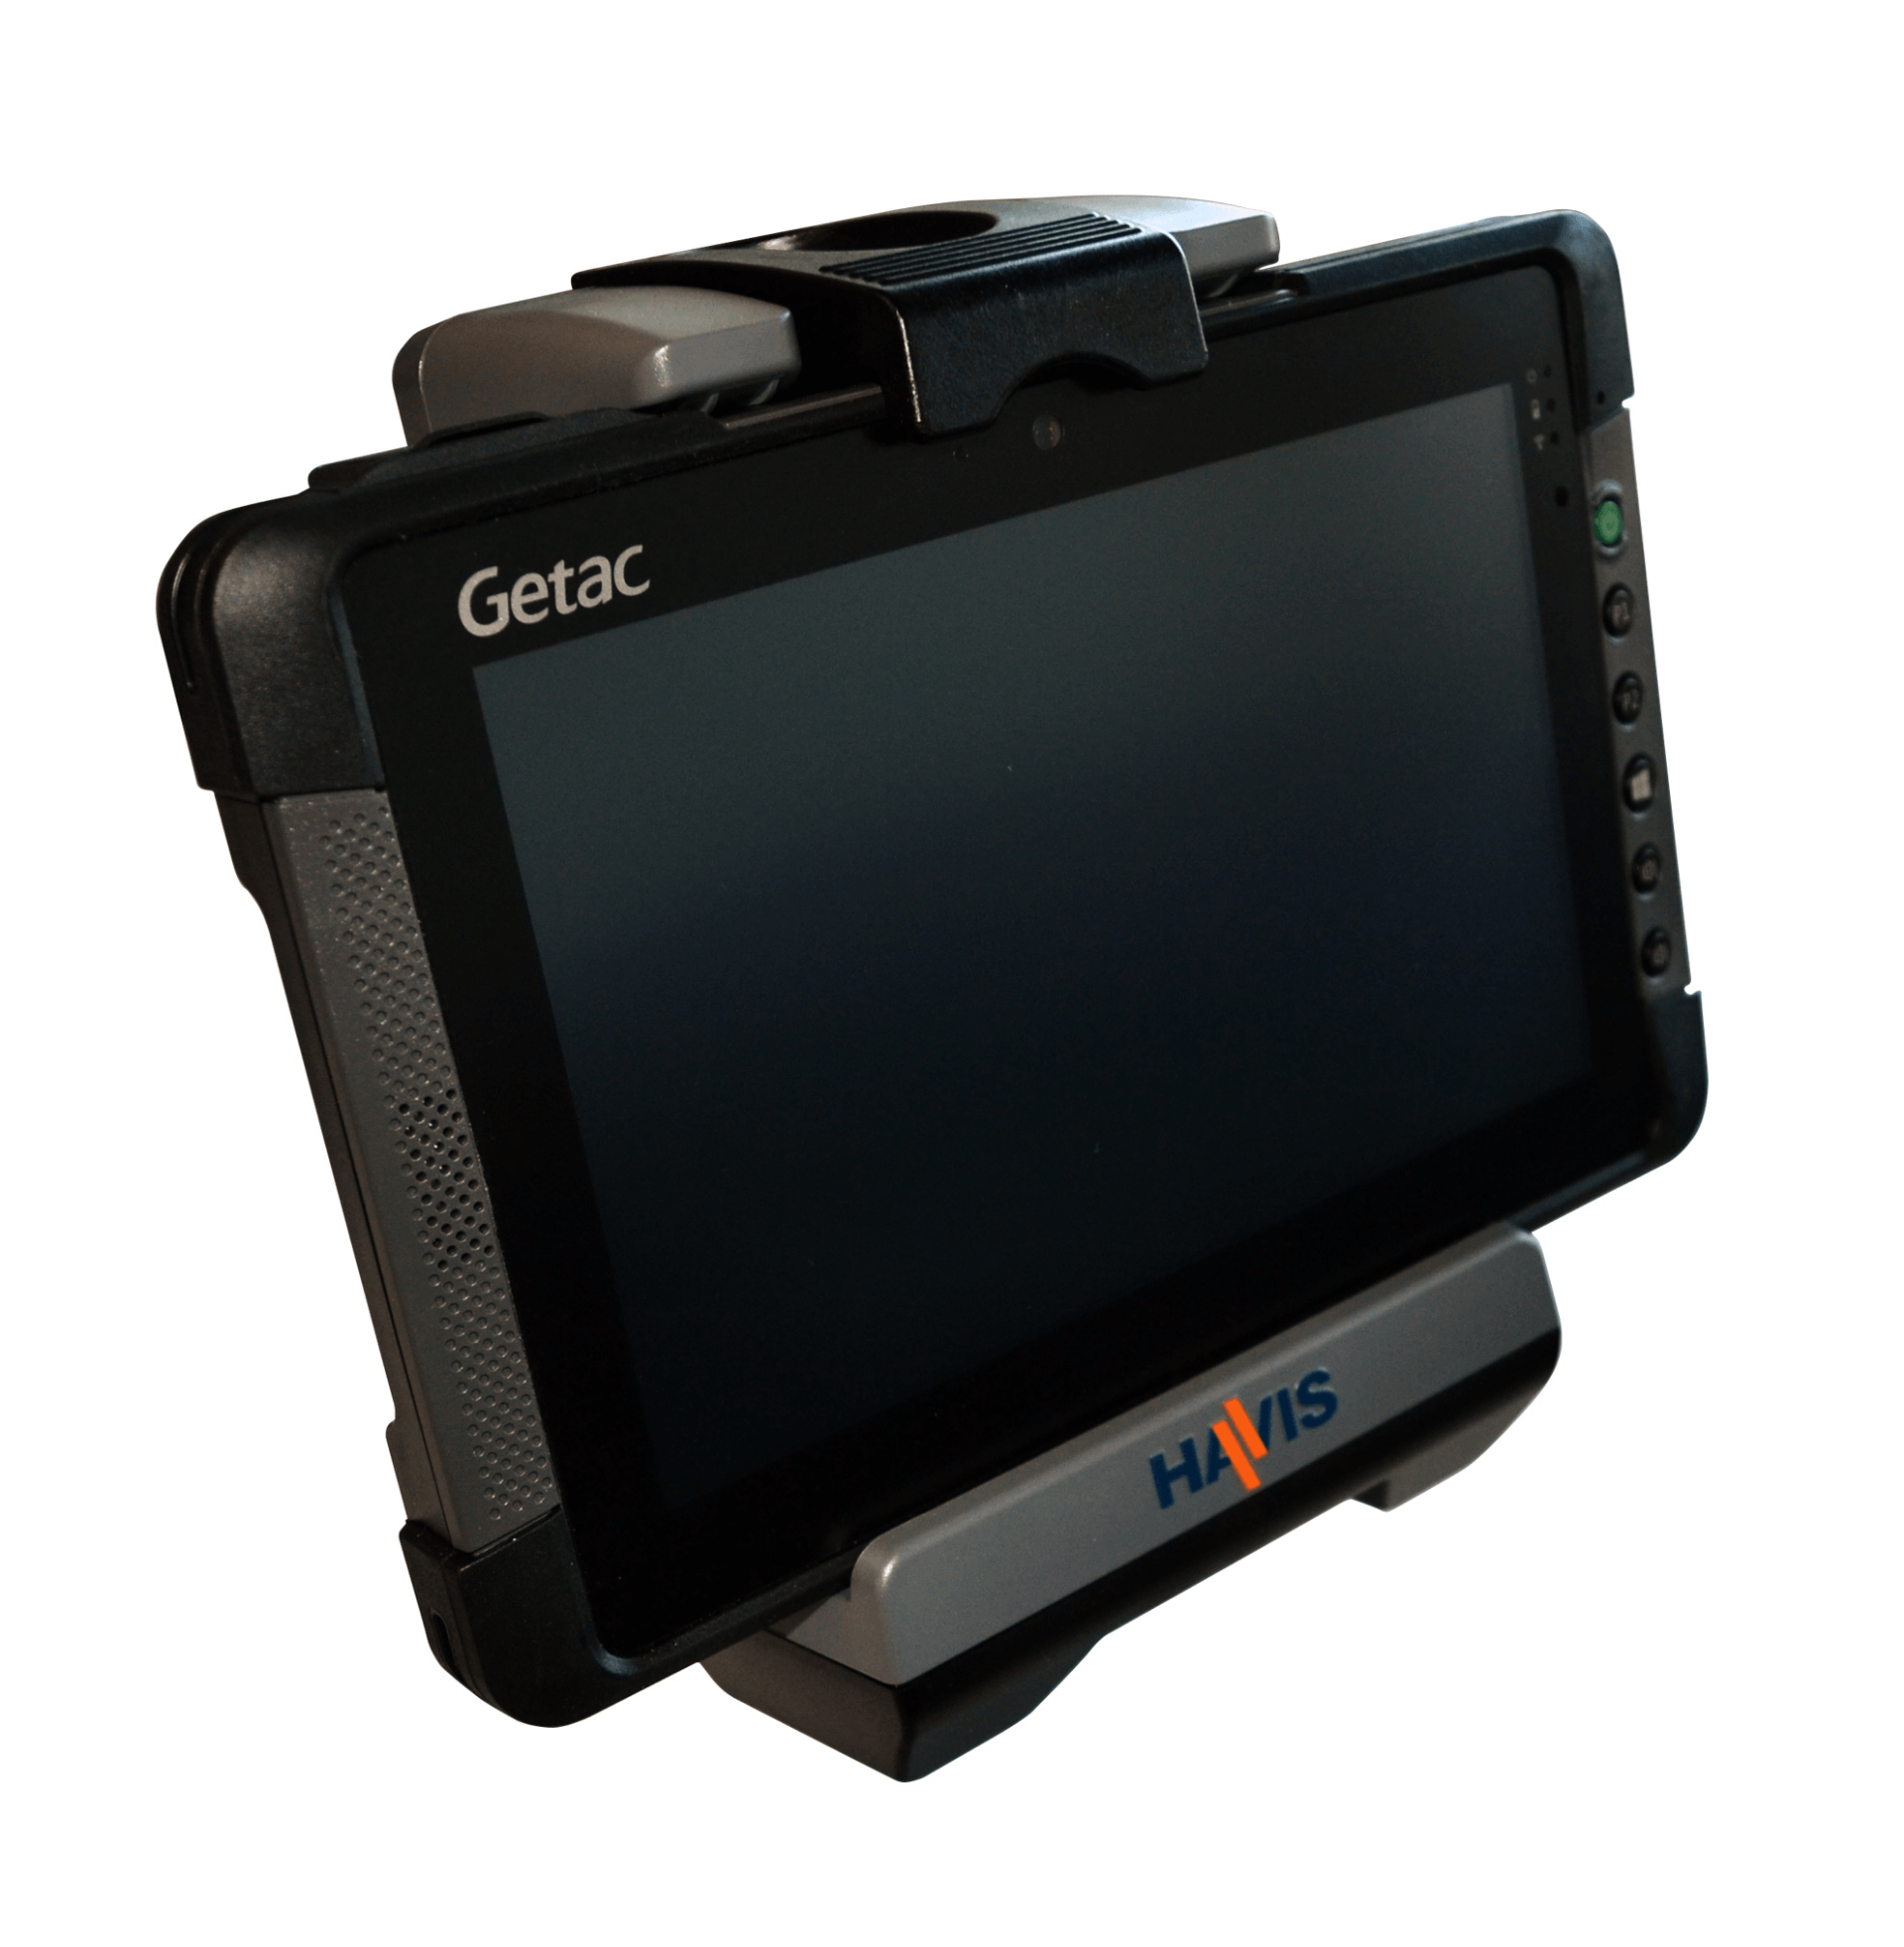 Getac T800 Tablet